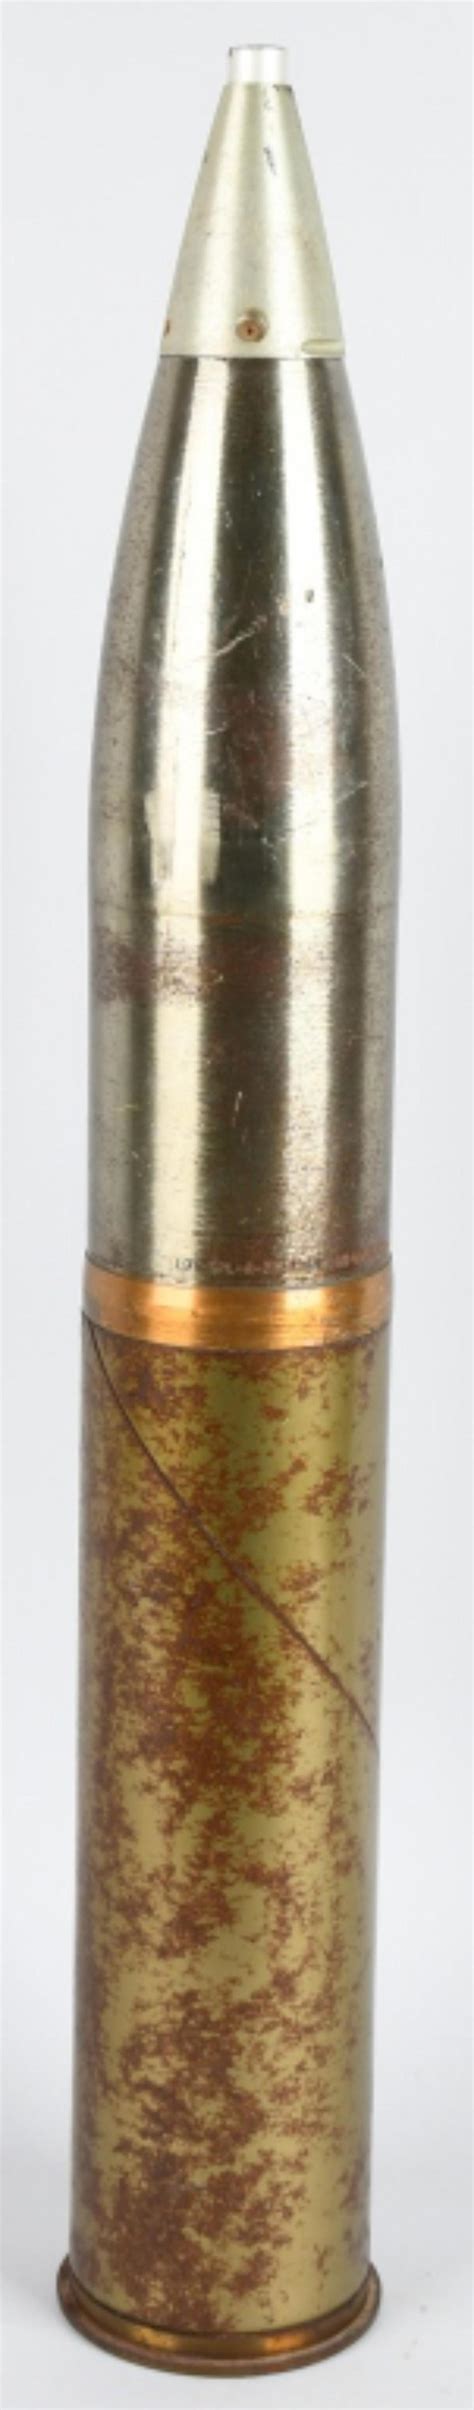 Sold Price Vietnam War Dated 105mm Artillery Shell Inert January 5